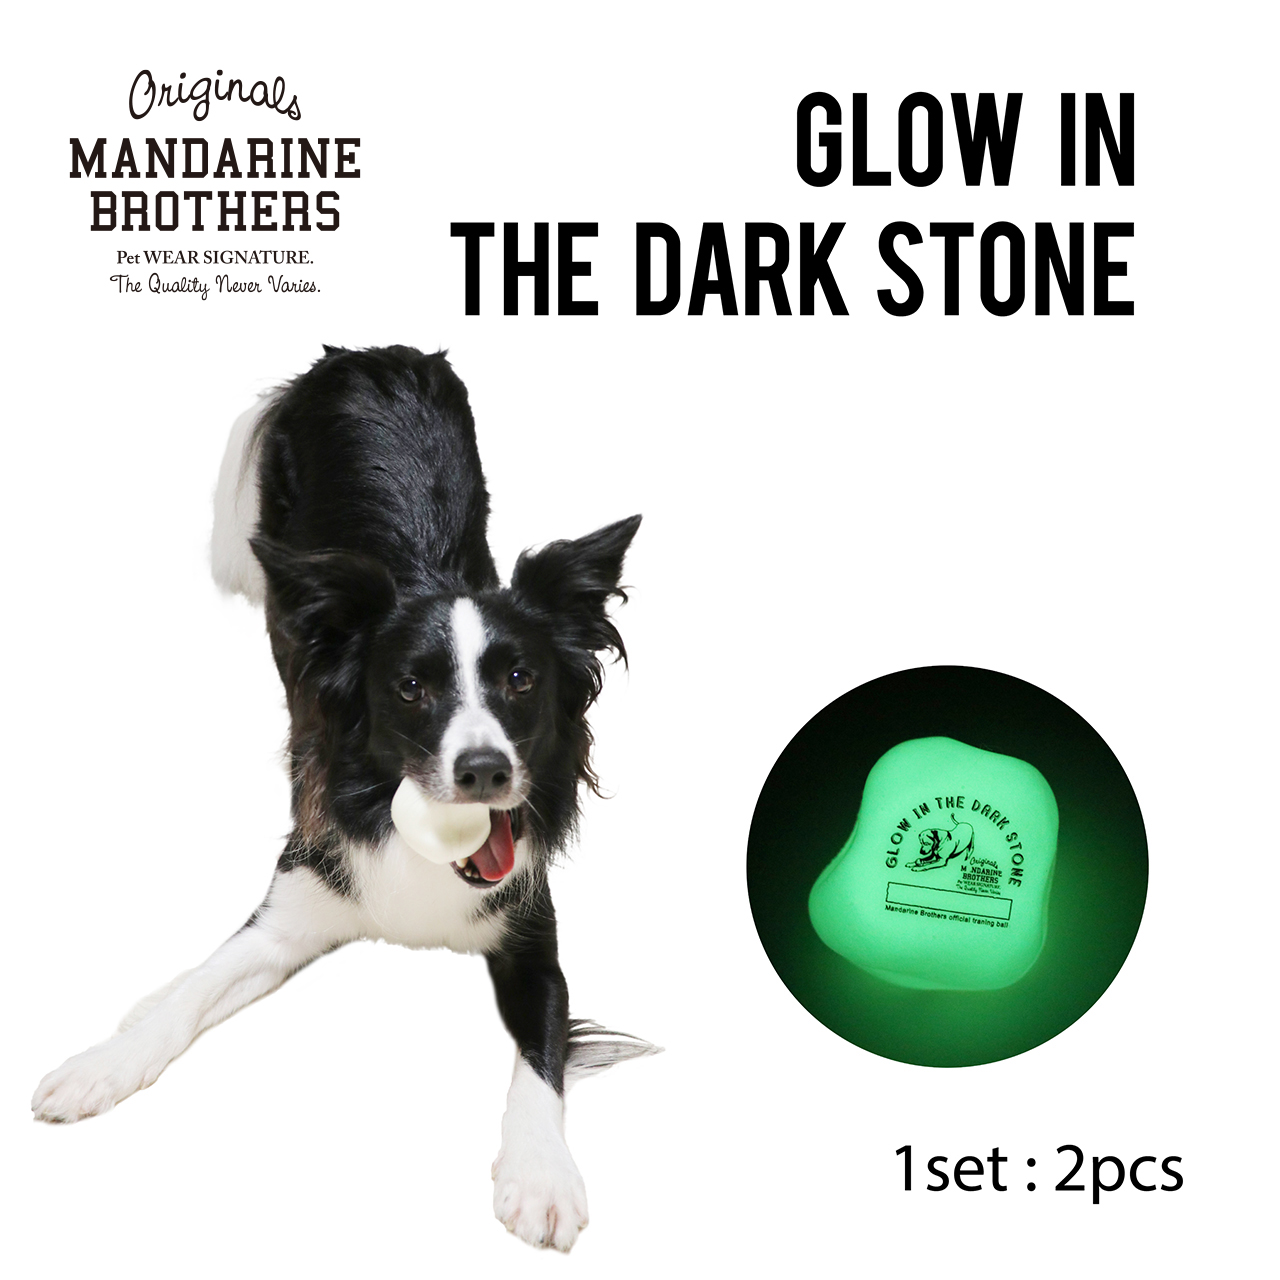 マンダリンブラザーズ 不規則な凸凹が予測不可能な動きで転がり愛犬も大興奮 暗闇で光るので夜間の運動でも大活躍 水遊びに最適な水に浮く素材です 2個入りパッケージです 犬 おもちゃ 玩具 ボール 蓄光 BROTHERS The Glow ペット Dark ペットグッズ アイテム勢ぞろい in Stone 人気の製品 MANDARINE